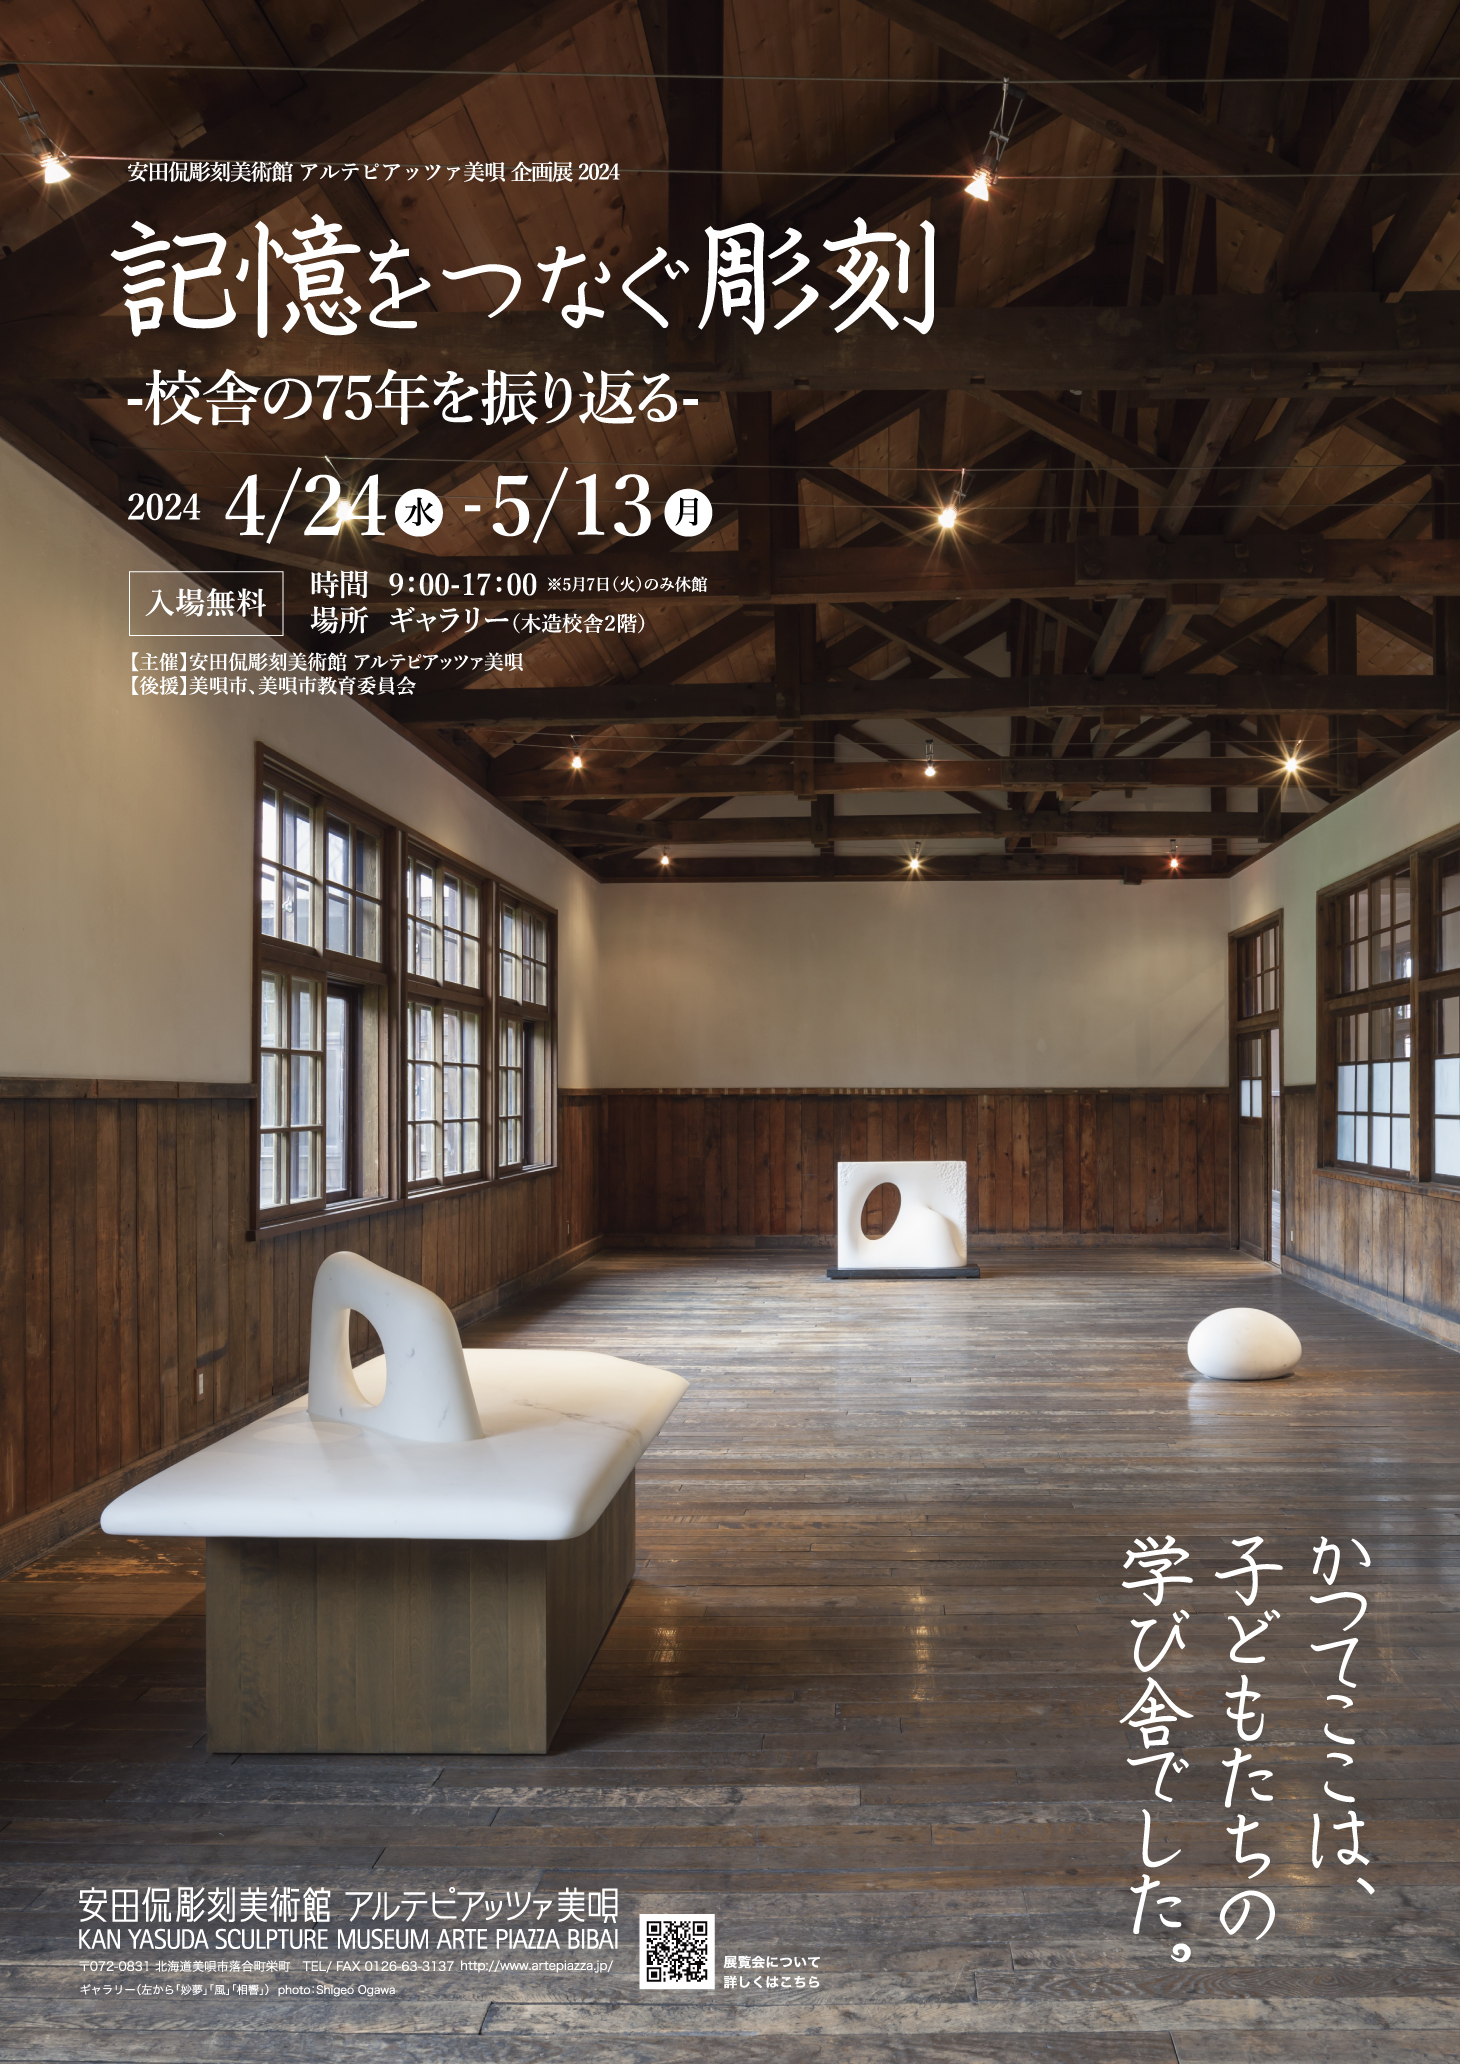 安田侃彫刻美術館アルテピアッツァ美唄企画展「記憶をつなぐ彫刻 ー 校舎の７５年を振り返るー」